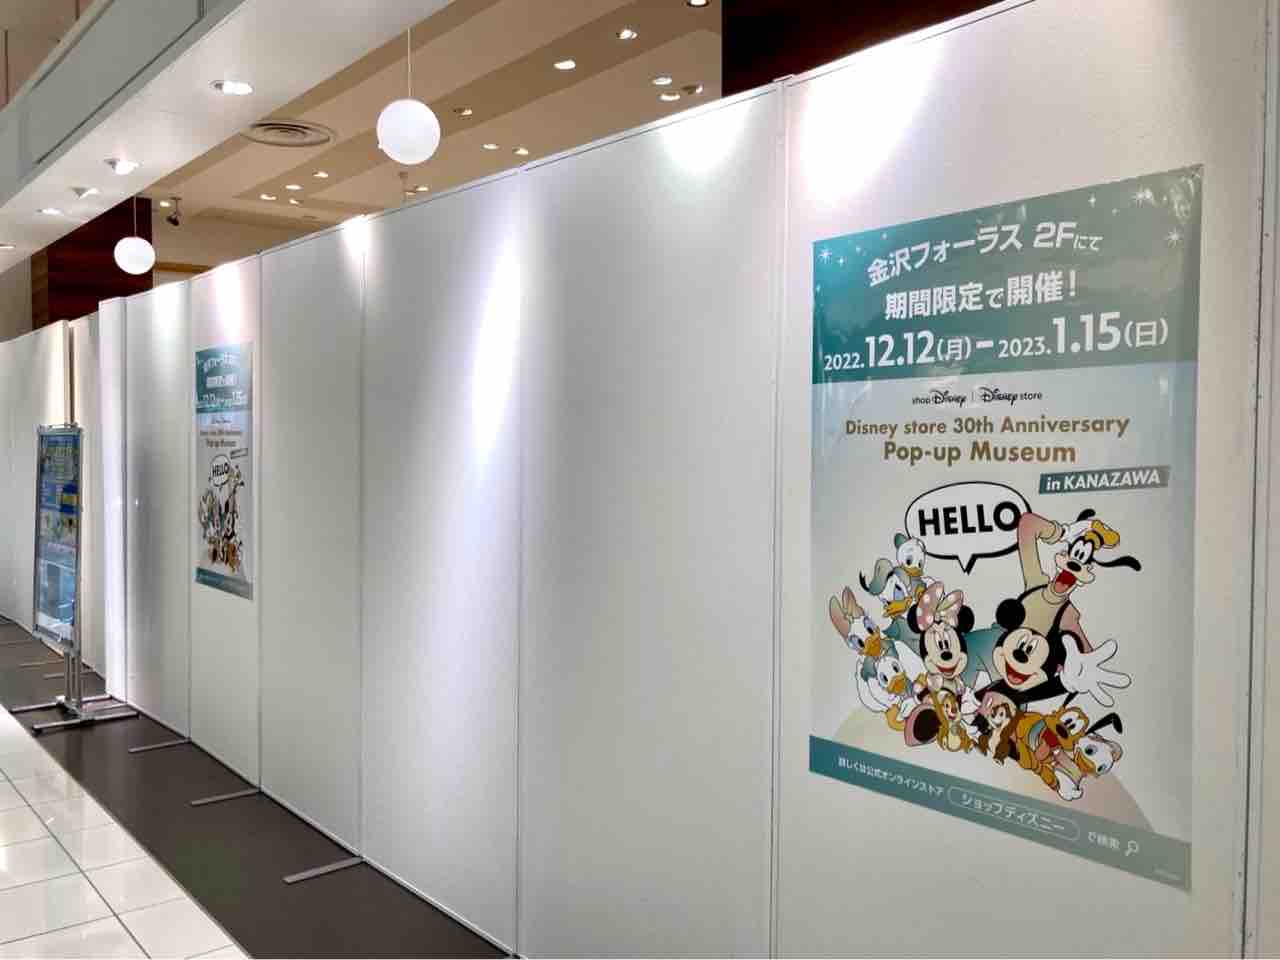 金沢フォーラス にディズニー直営ストア Disney Store 30th Anniversary Pop Up Museum In Kanazawa が期間限定オープンするらしい 12月12日 23年1月15日 金沢デイズ 石川県金沢市の地域情報サイト